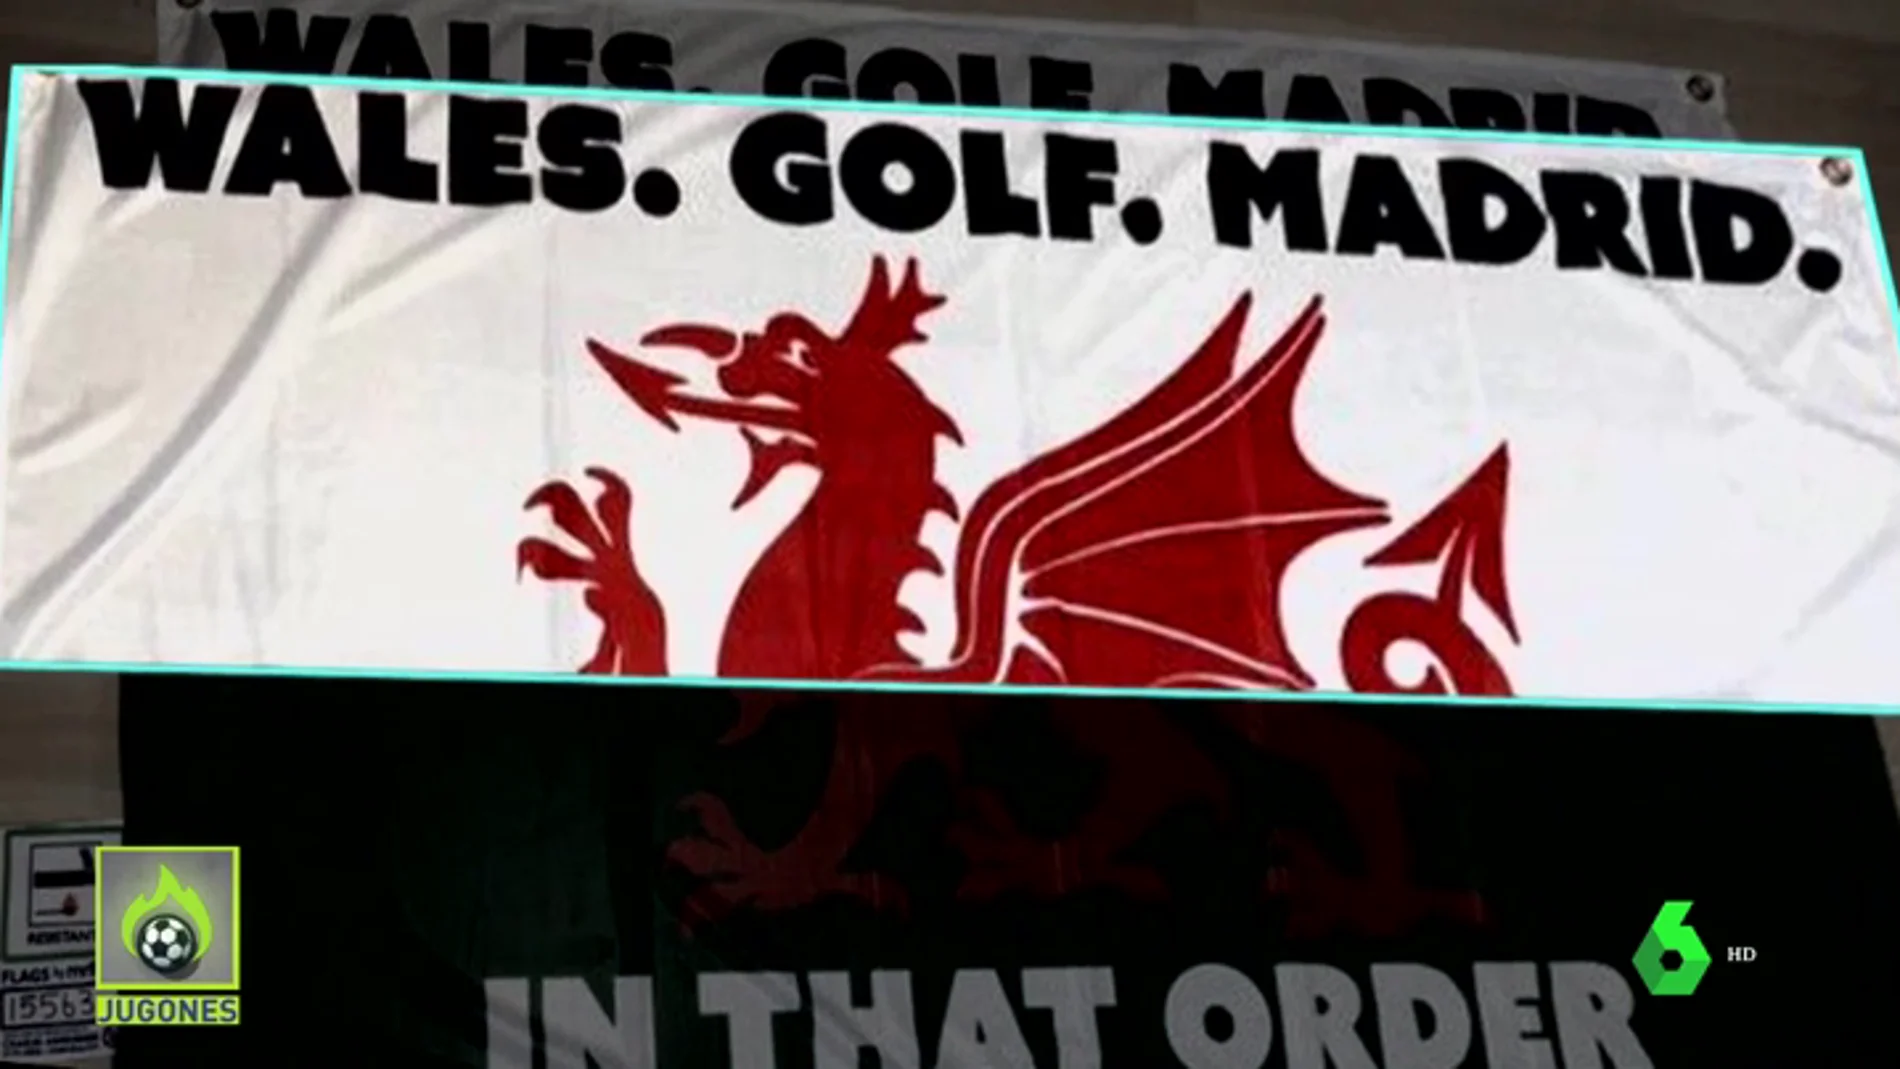 Gales, Golf, Madrid : El cántico sobre Bale que arrasa en su país